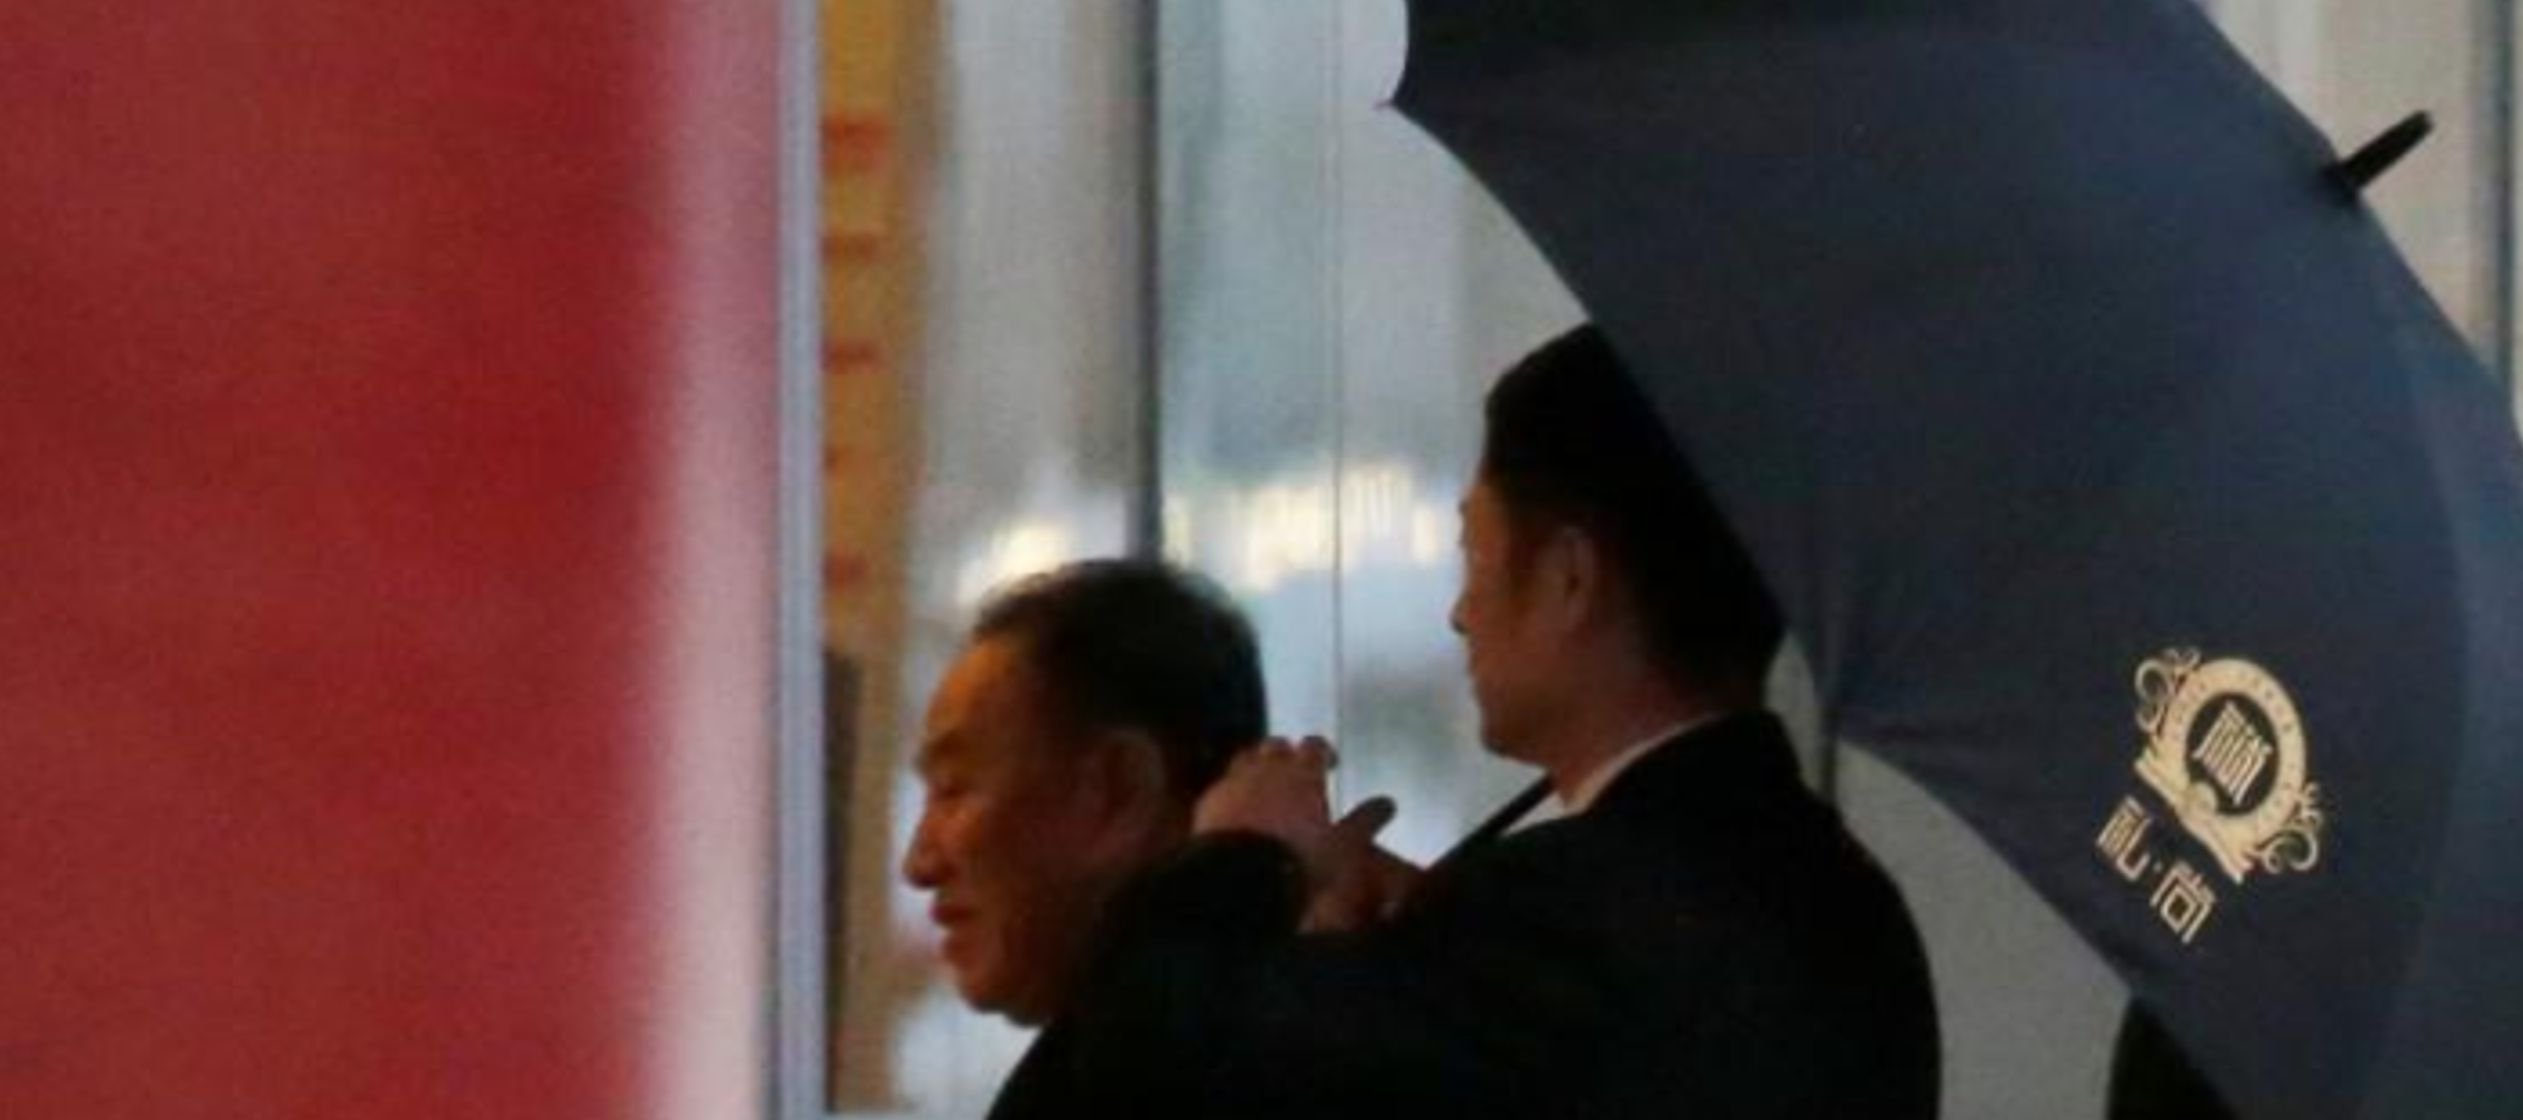 Kim Yong Chol abordó un vuelo en Pekín el jueves, dijo más temprano la agencia...